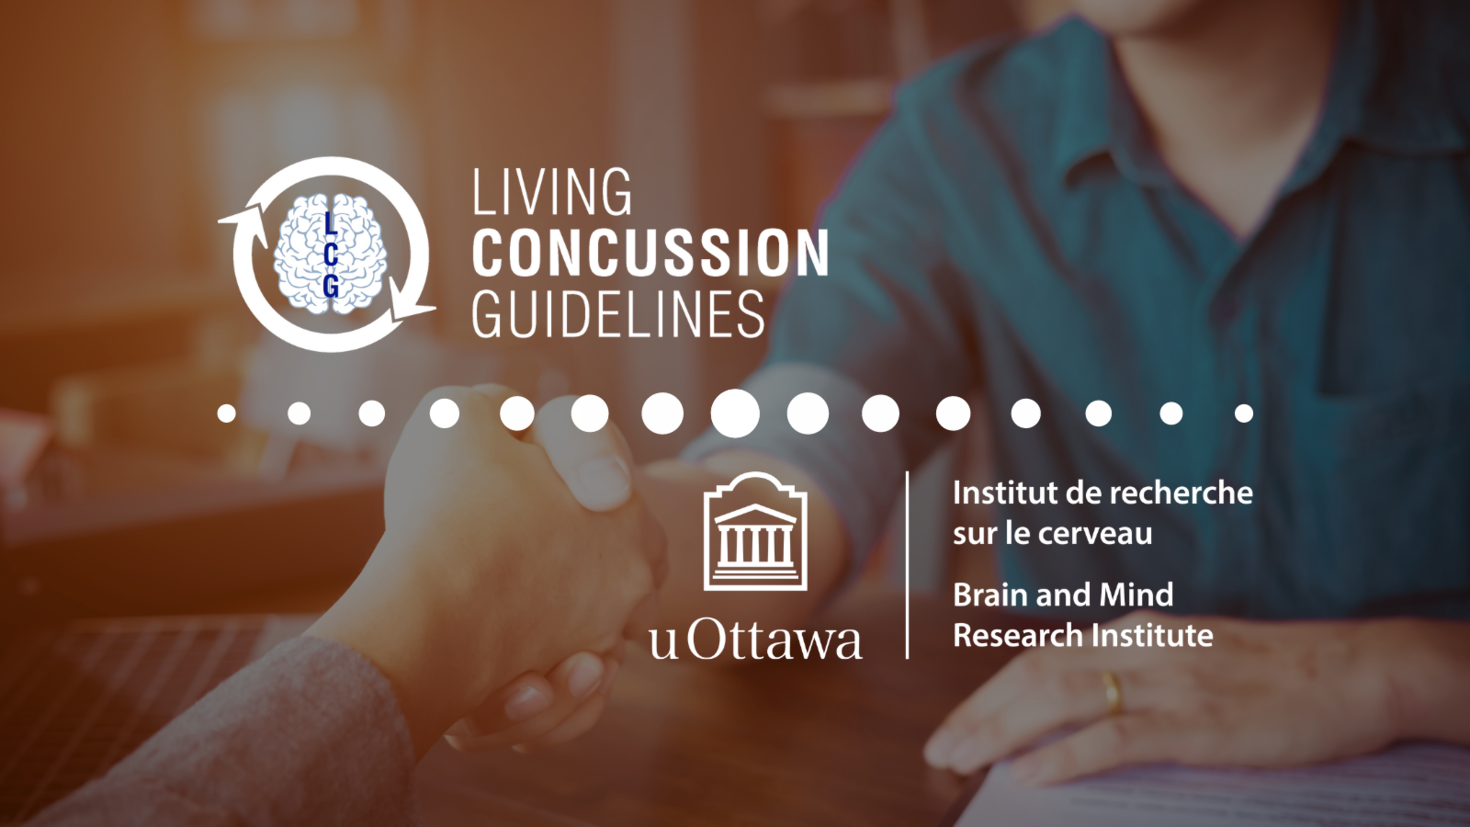 Logo de Living Concussion Guideline dans le haut d’une image montrant deux personnes qui se serrent la main. Logo de l’IRCuO dans le bas de l’image.